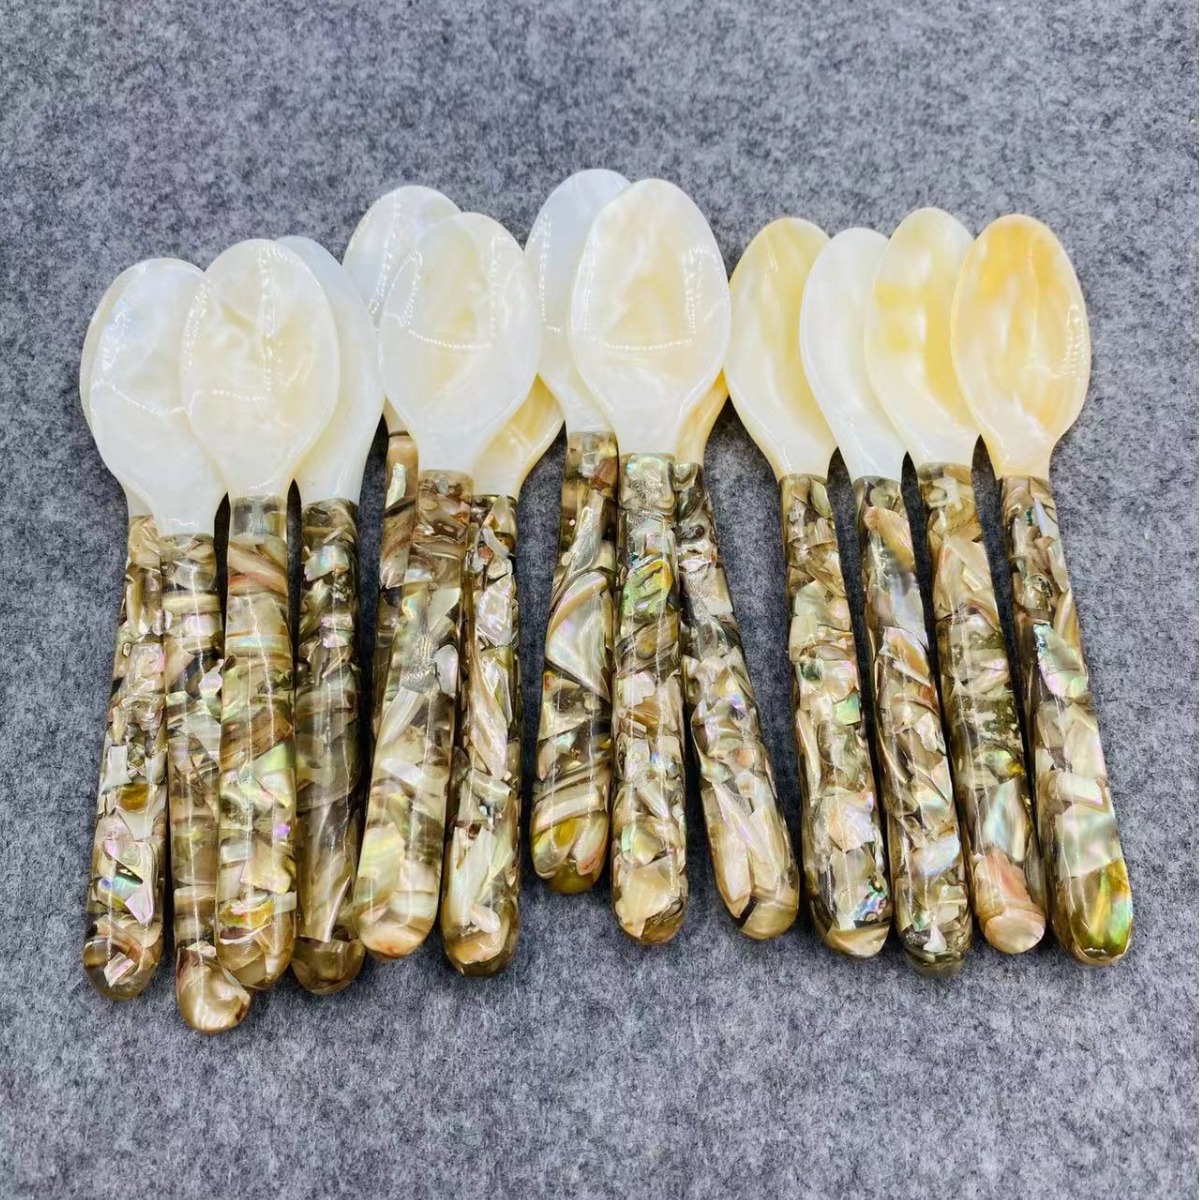 越南手工碎花柄贝壳勺甜品点心叉勺套装高档精致餐具批发